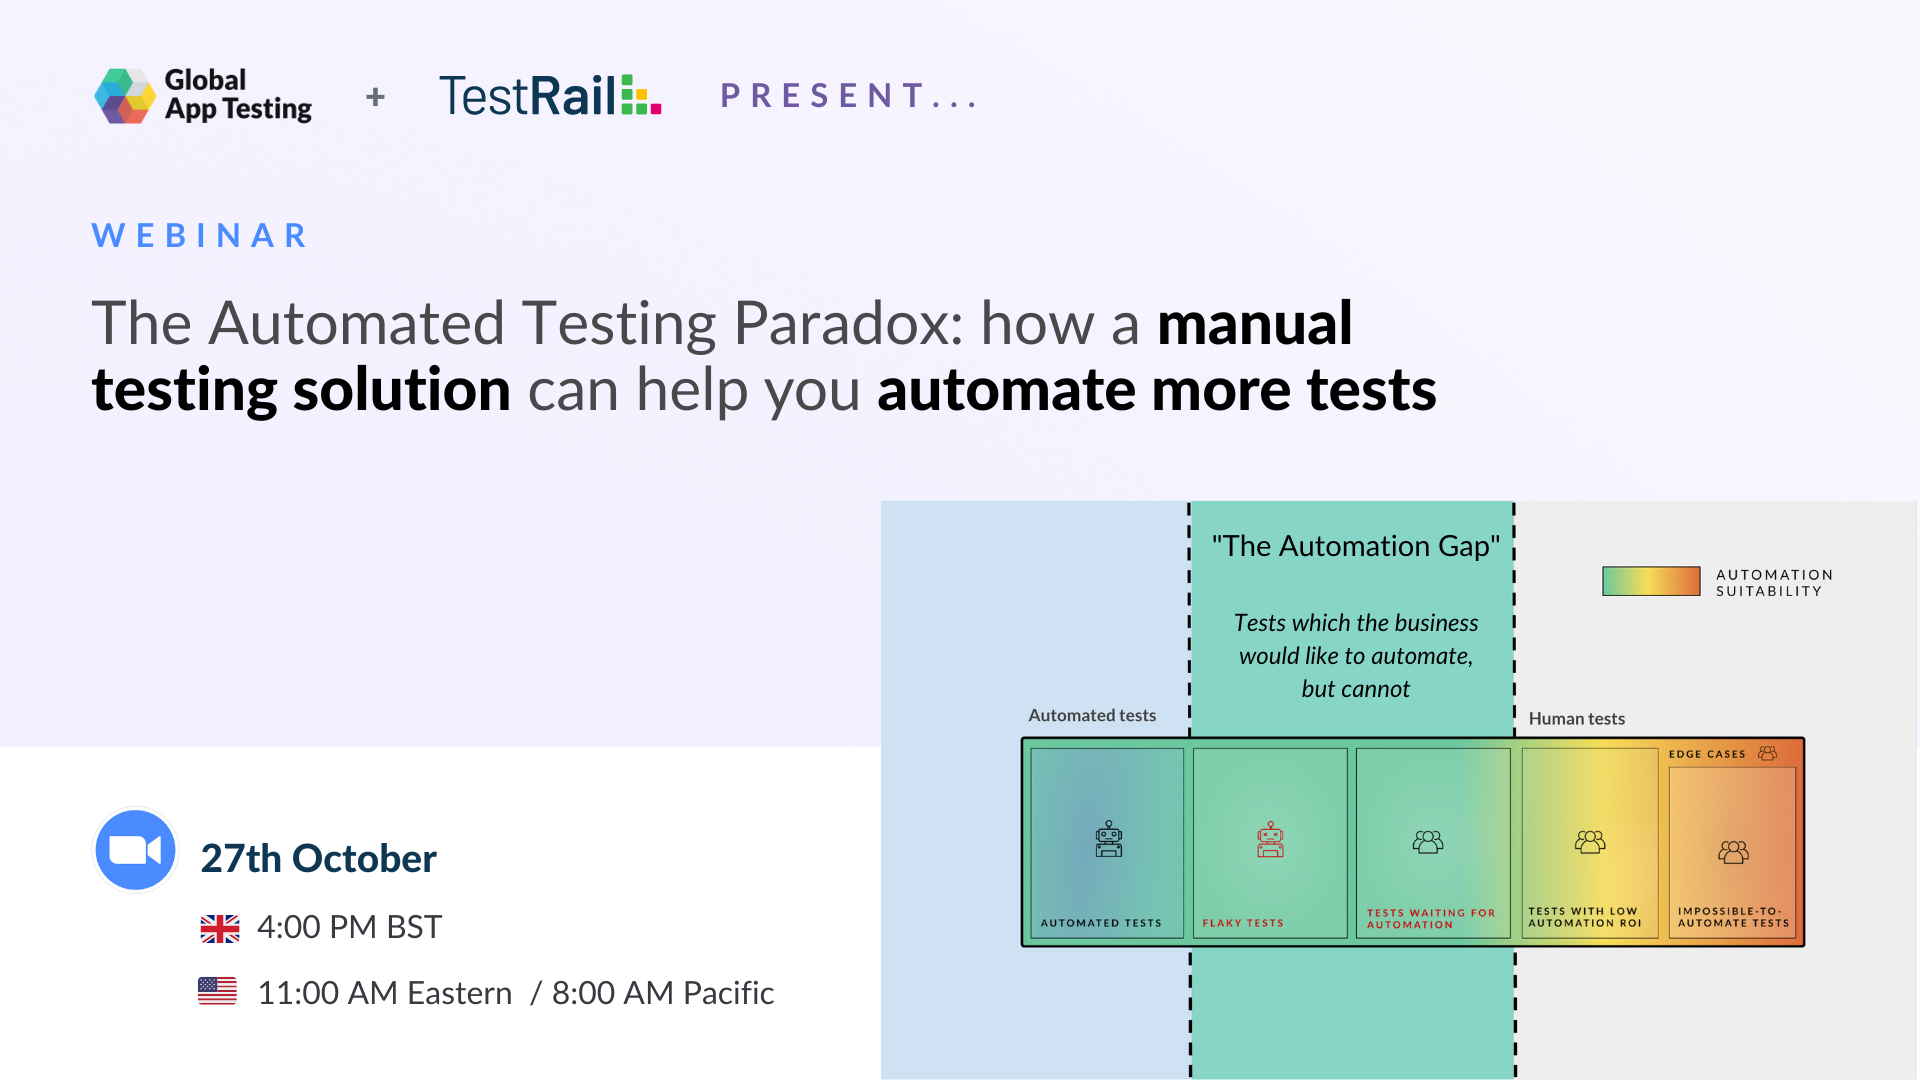 Global App Testing and TestRail webinar